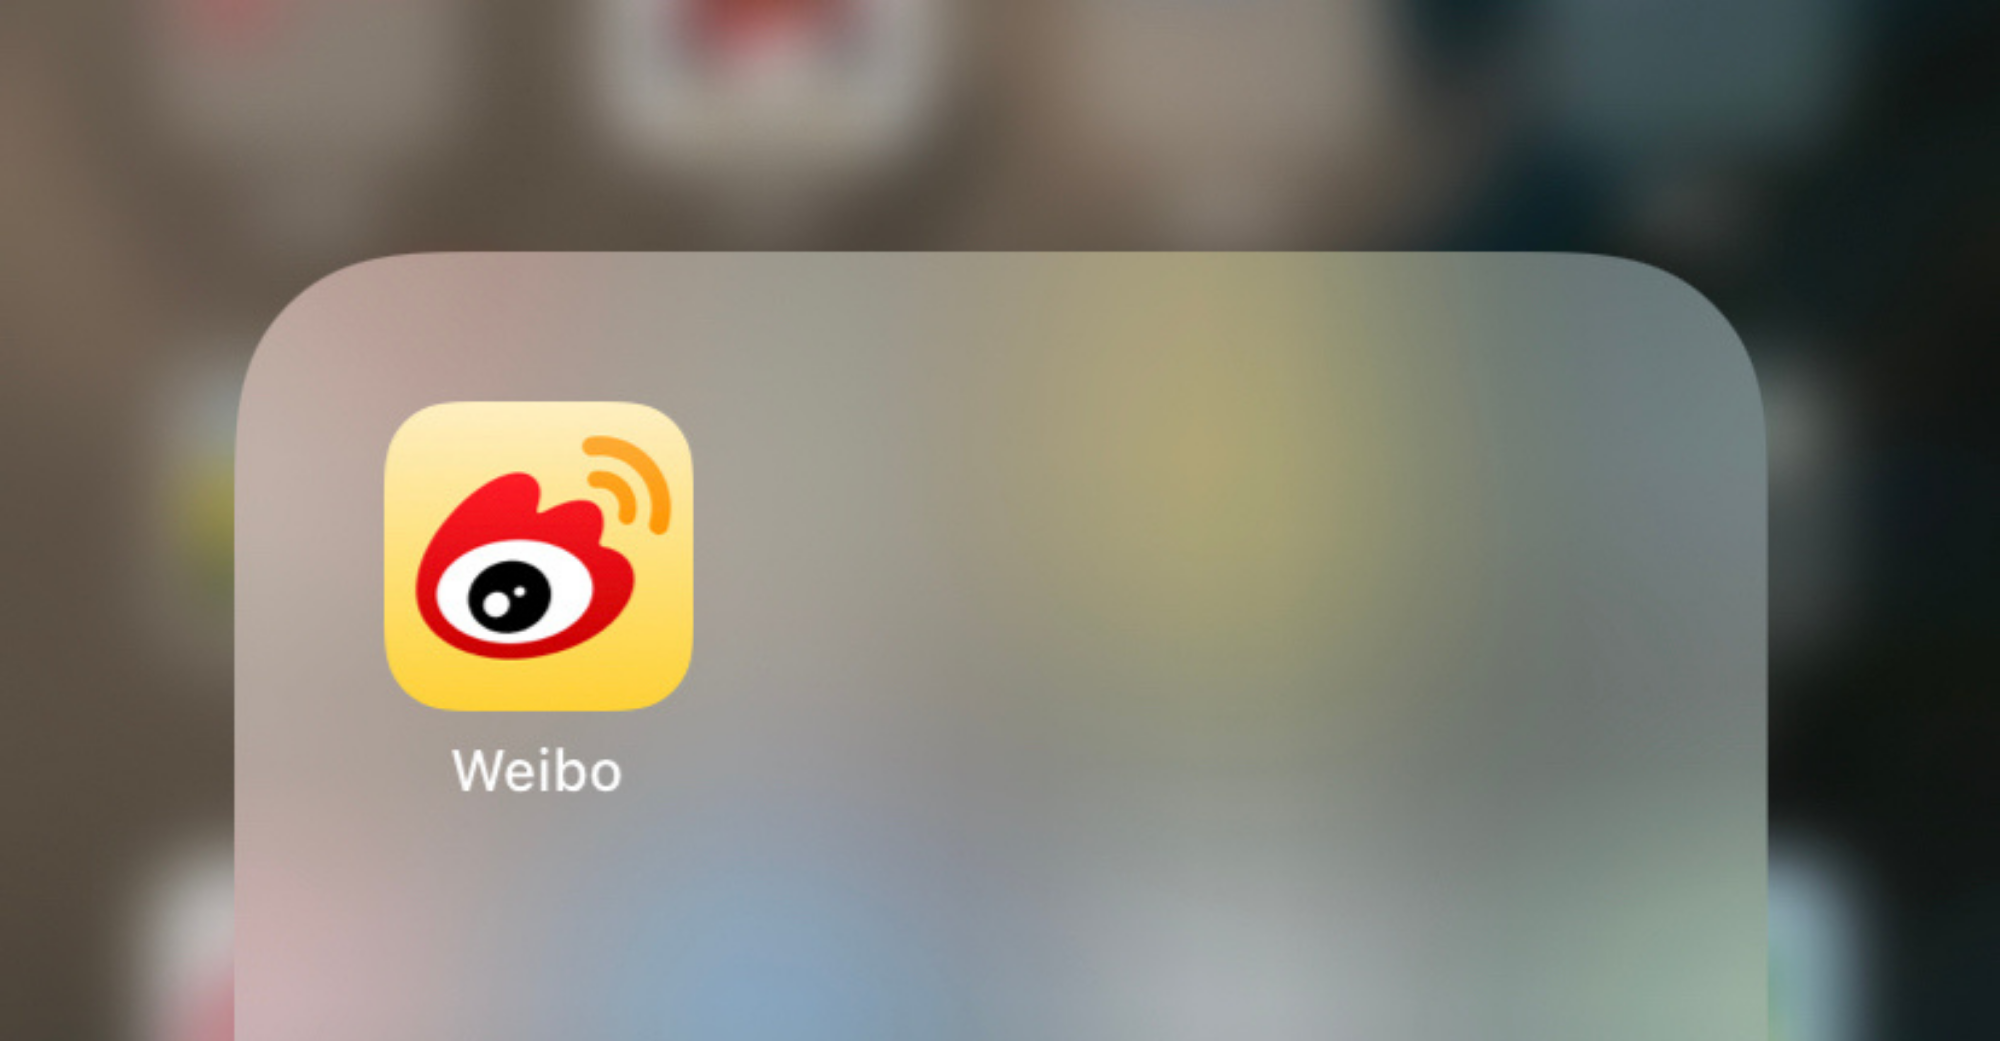 Weibo दुनिया भर में 11 मिलियन शेयर बेचता है, जो $49.75 प्रति शेयर से अधिक नहीं है